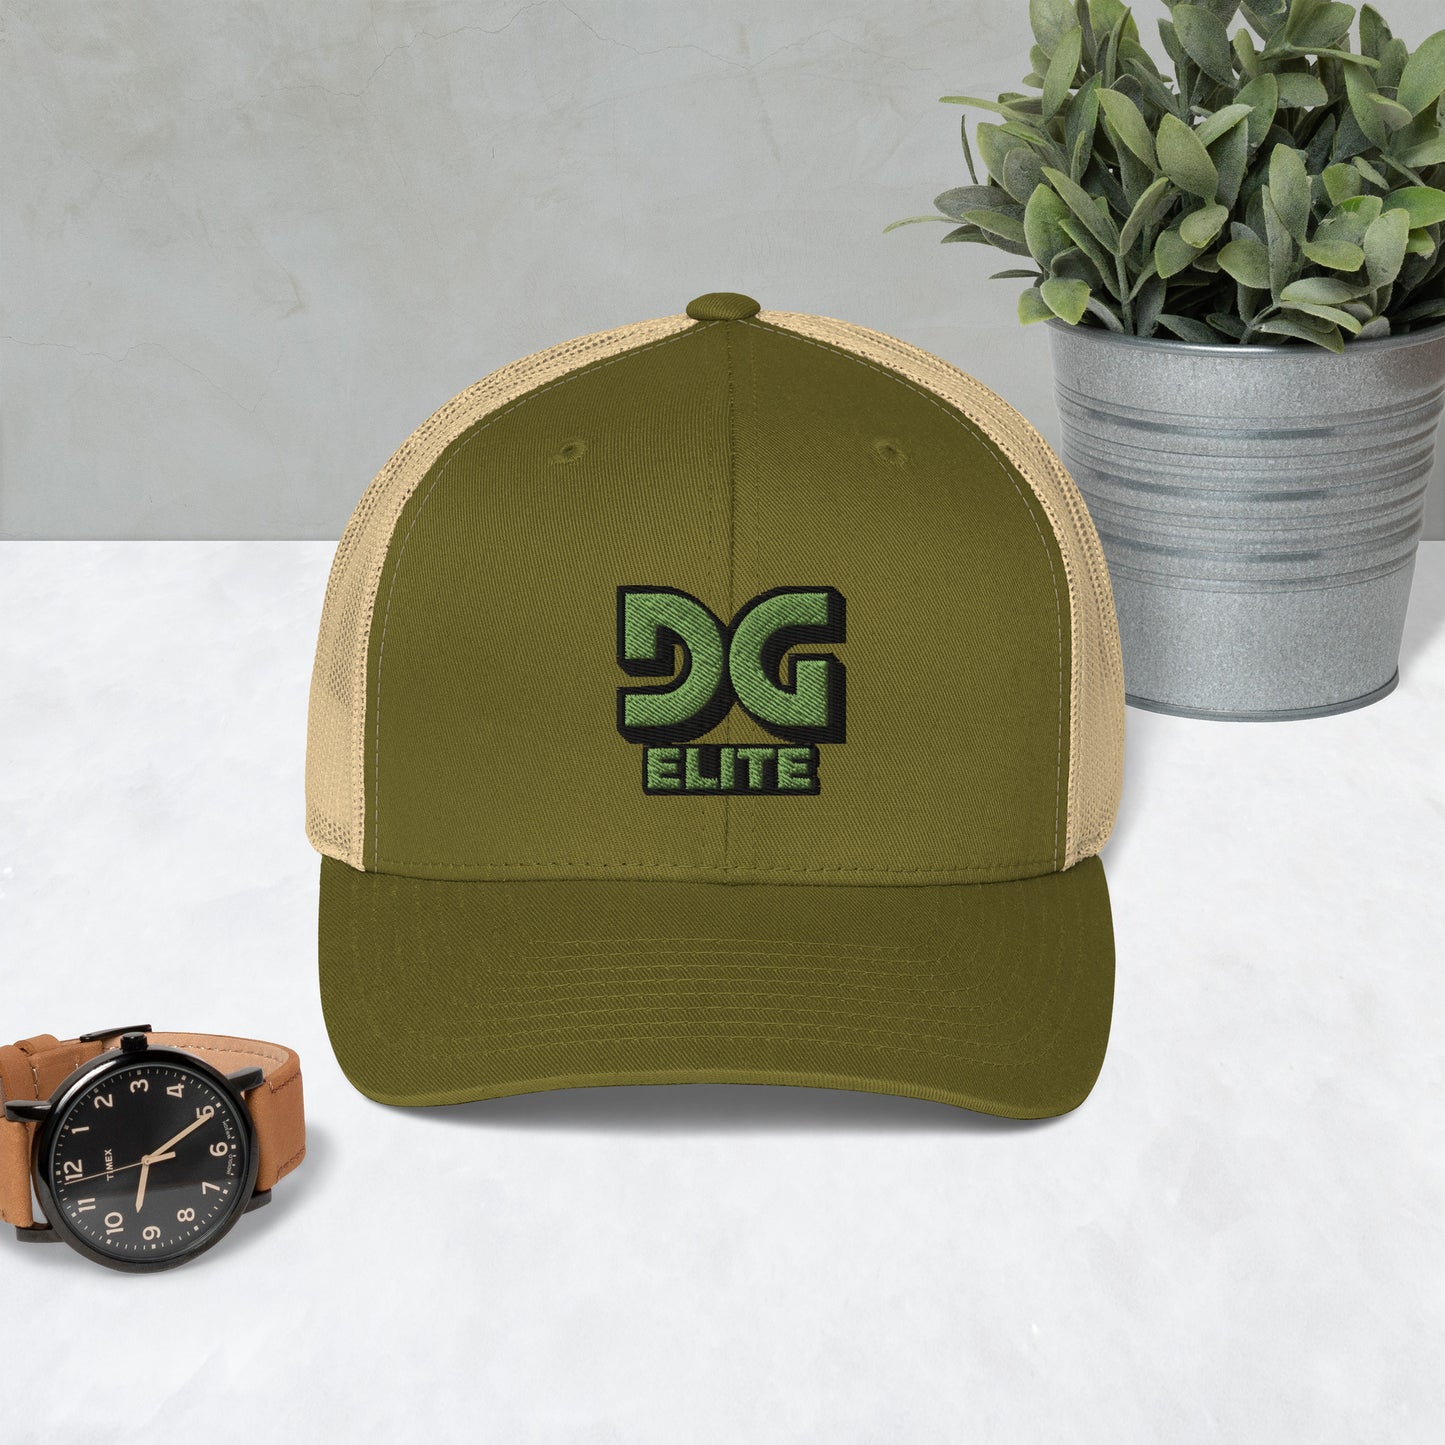 DG Elite Logo Trucker Cap